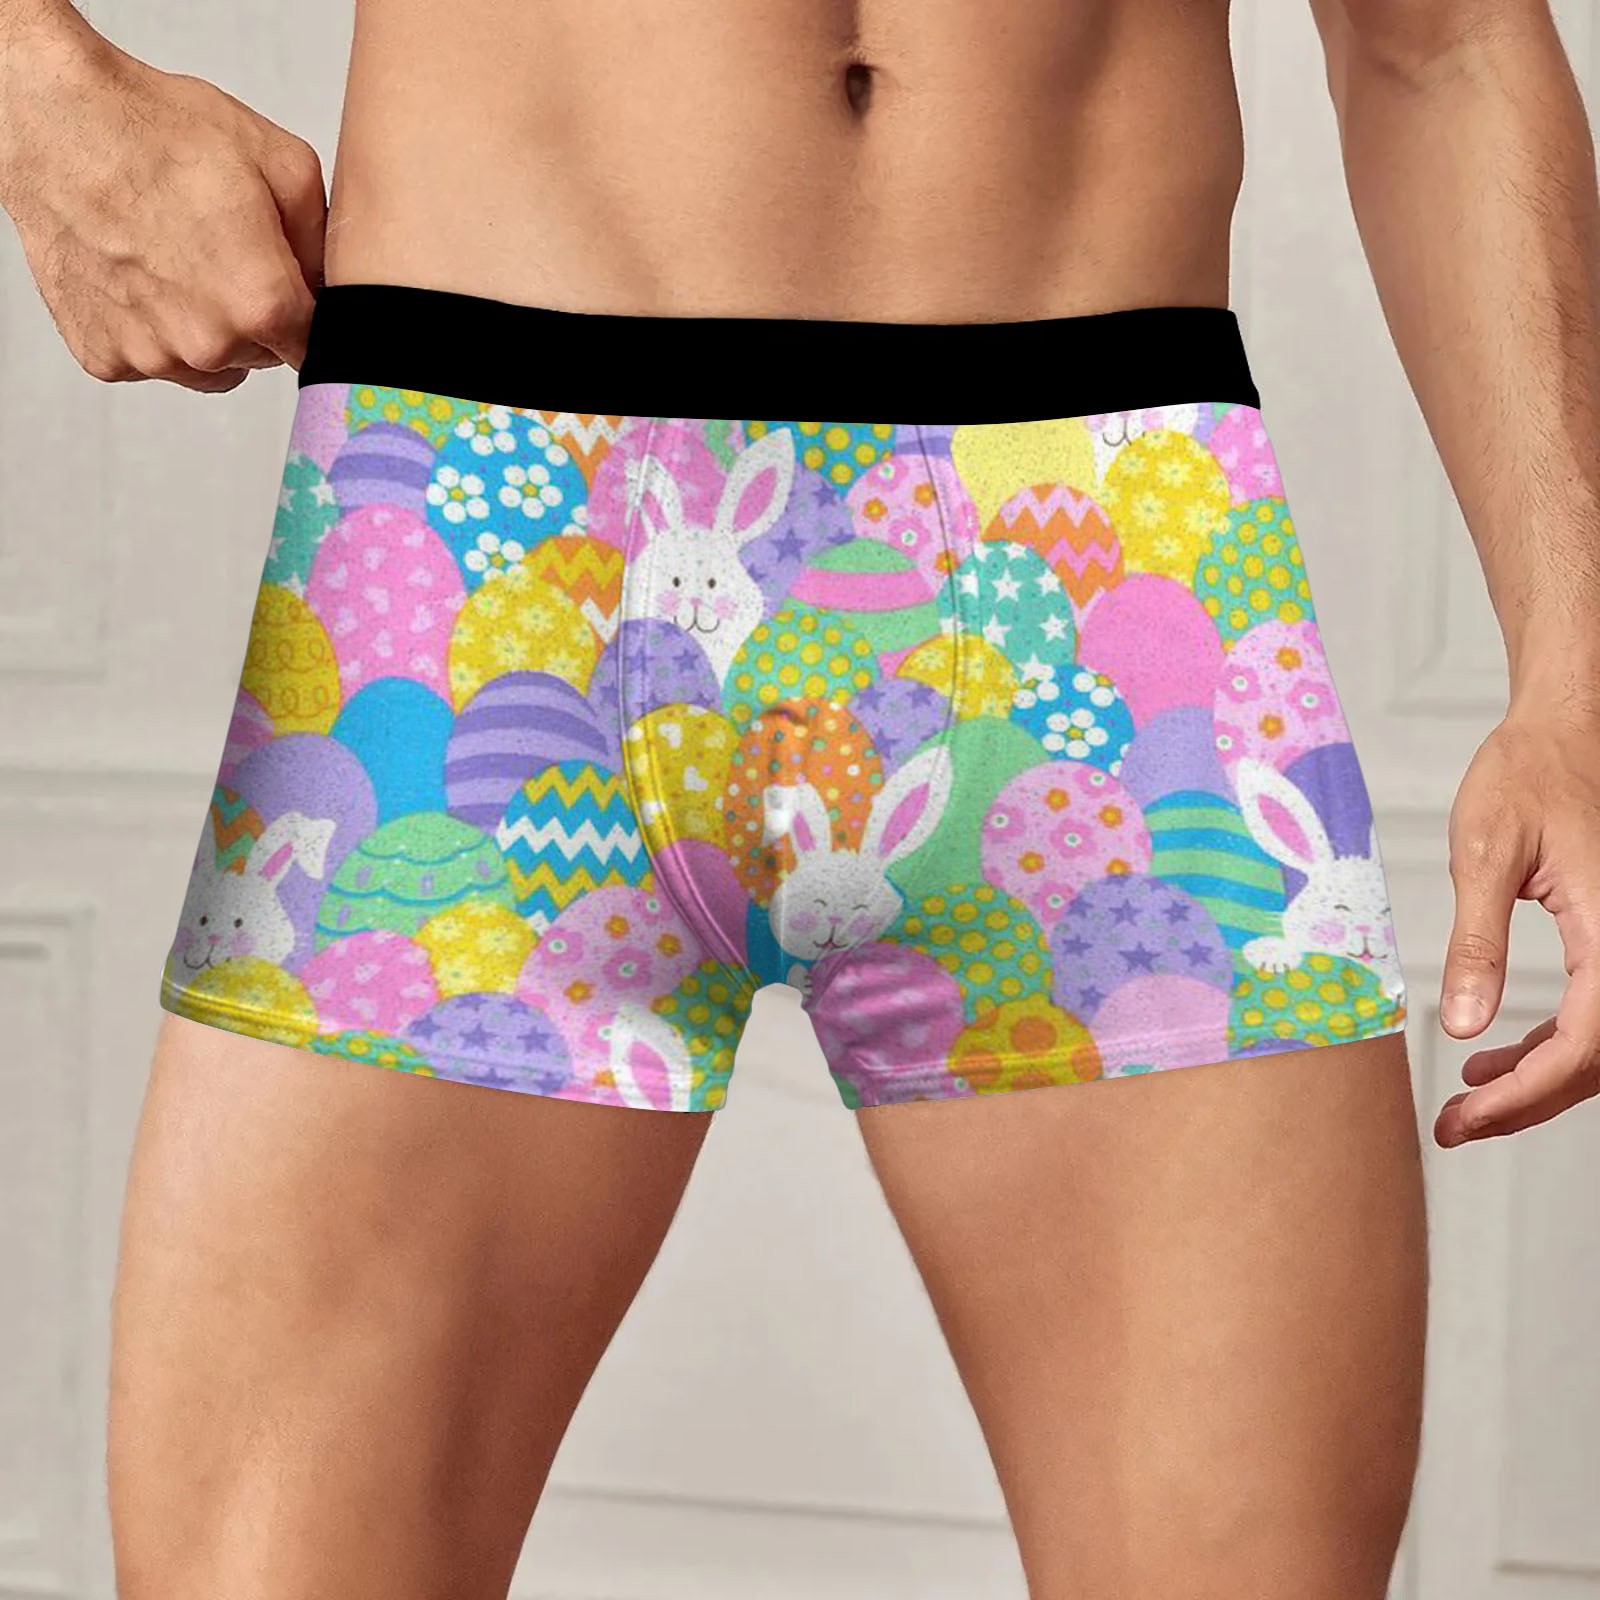 Men's Underwear, Boxer Briefs for Men Pack, Mens Easter Underwear ...